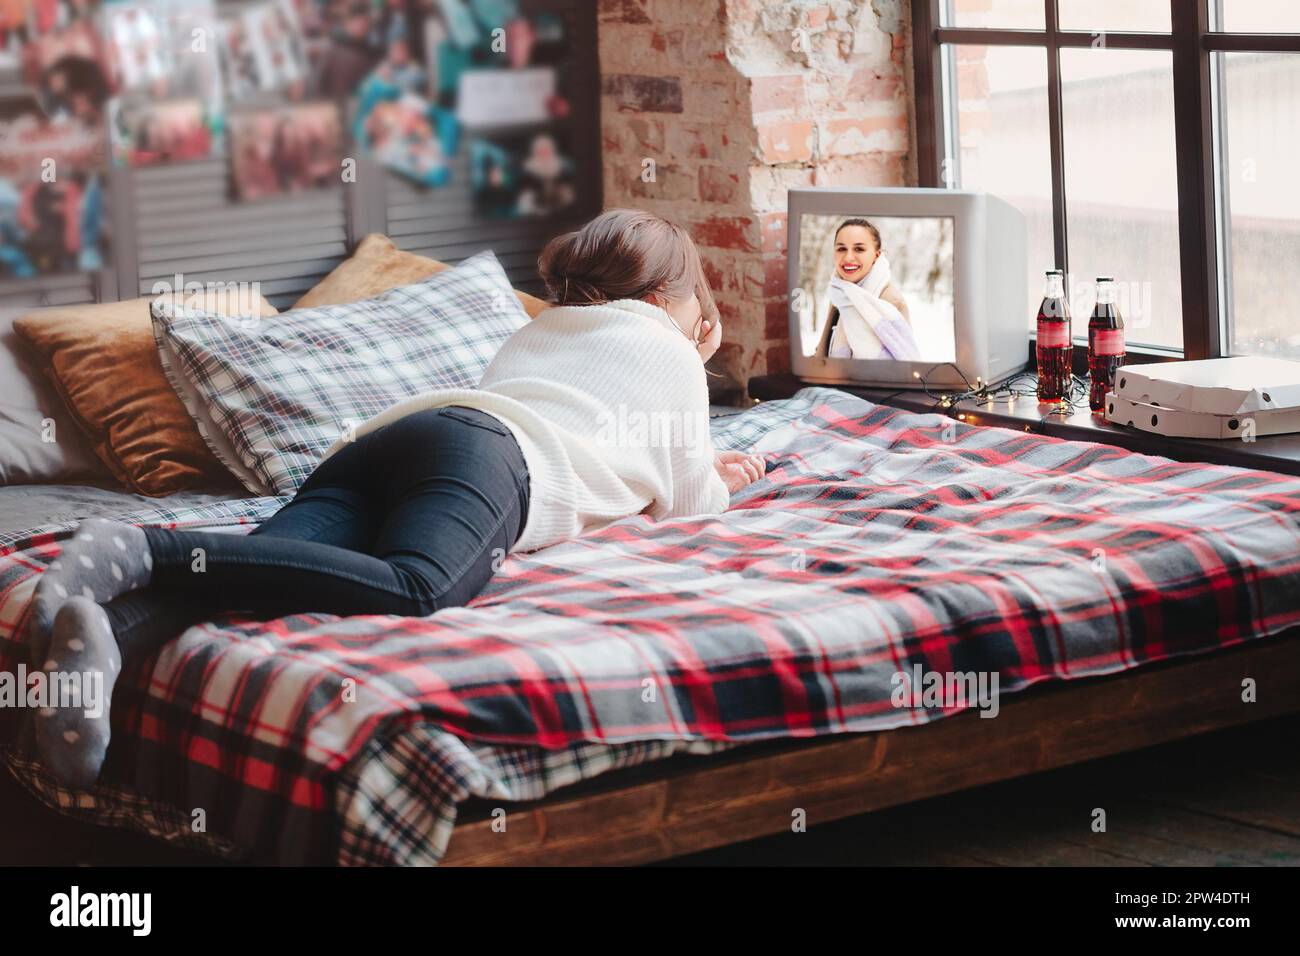 Unkenntliche Frau, die sich auf einem bequemen Bett mit karierter Decke entspannt und zu Hause Retro-TV guckend Stockfoto